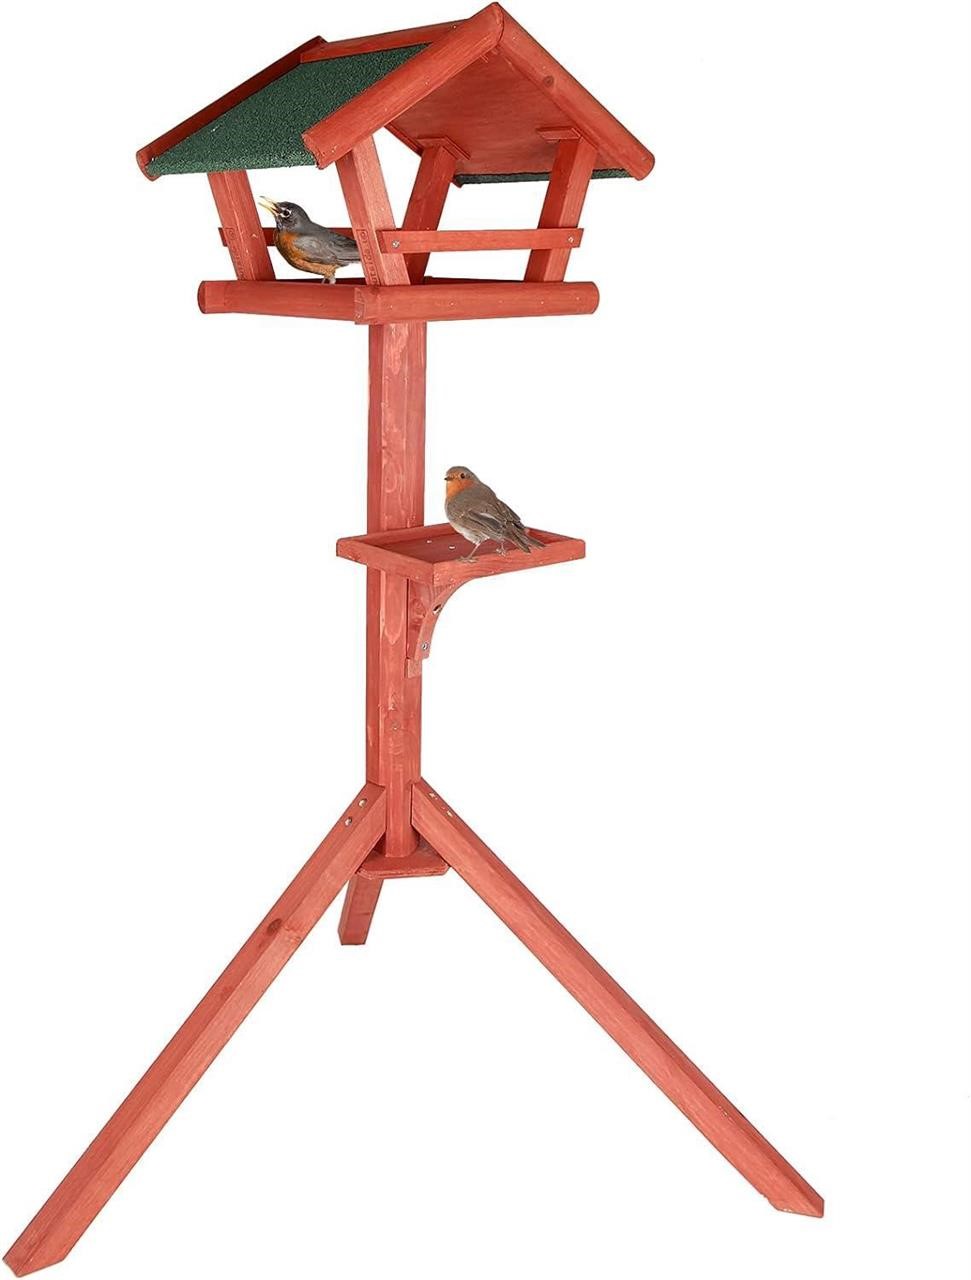 Petsfit Wooden Bird Table 50 High